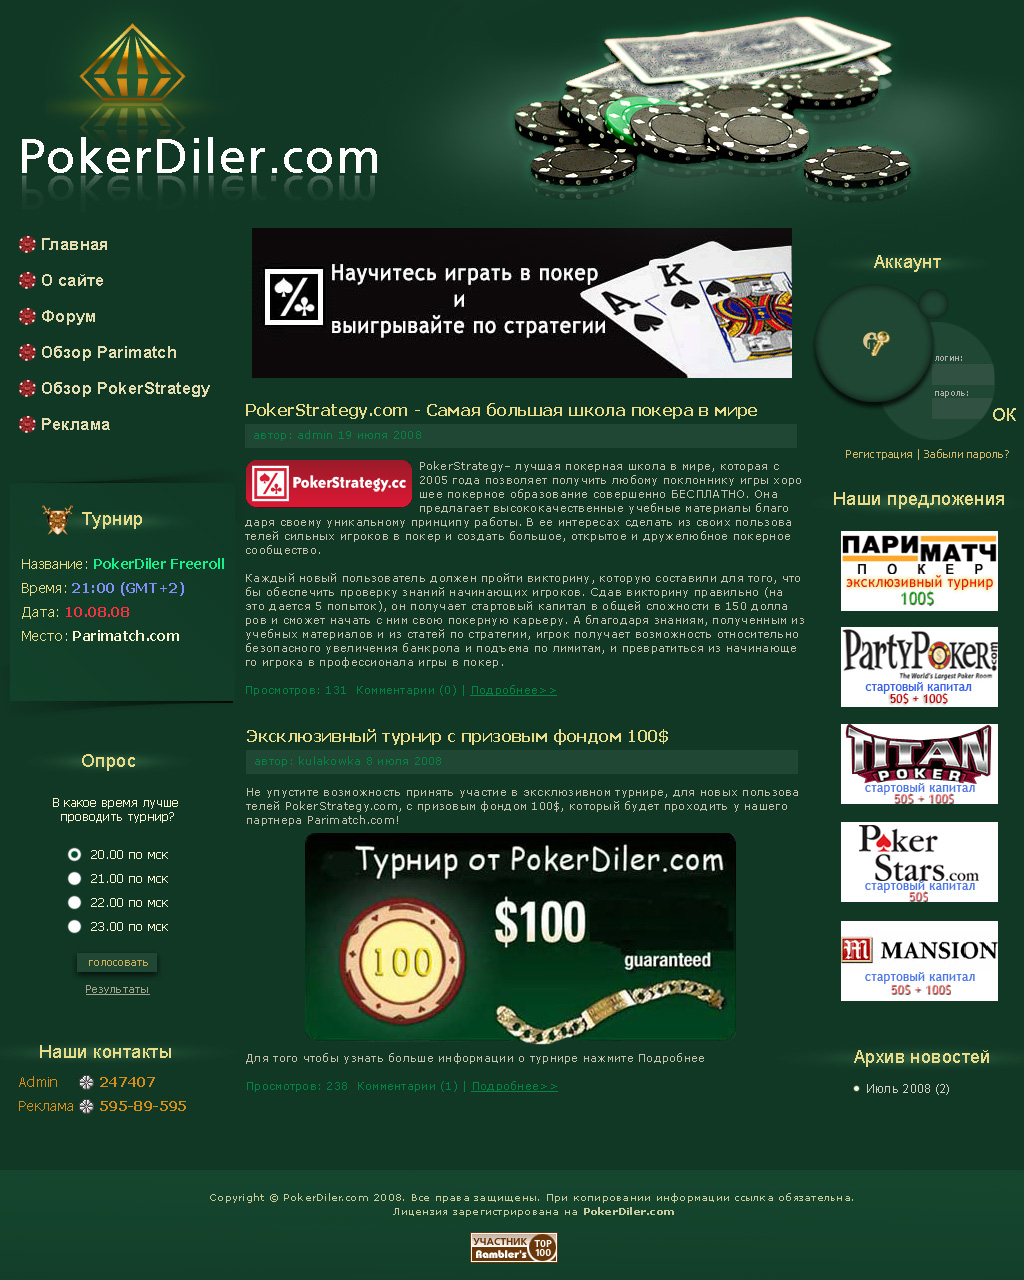 Дизайн для сайта pokerdiler.com